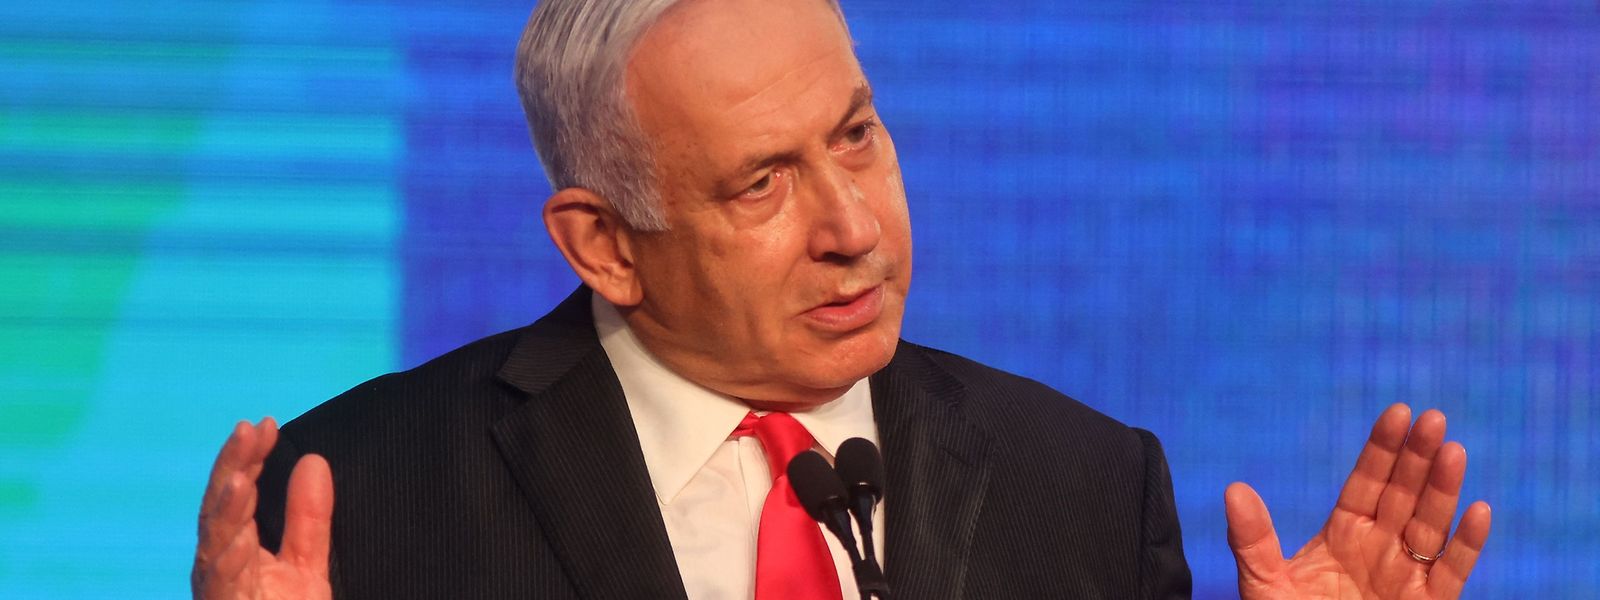 Nach dem vorläufigen Ergebnis bleibt der Likud von Netanjahu zwar stärkste Kraft. Allerdings reicht es für das von Netanjahu angestrebte Bündnis rechter und religiöser Parteien nicht für eine Mehrheit.